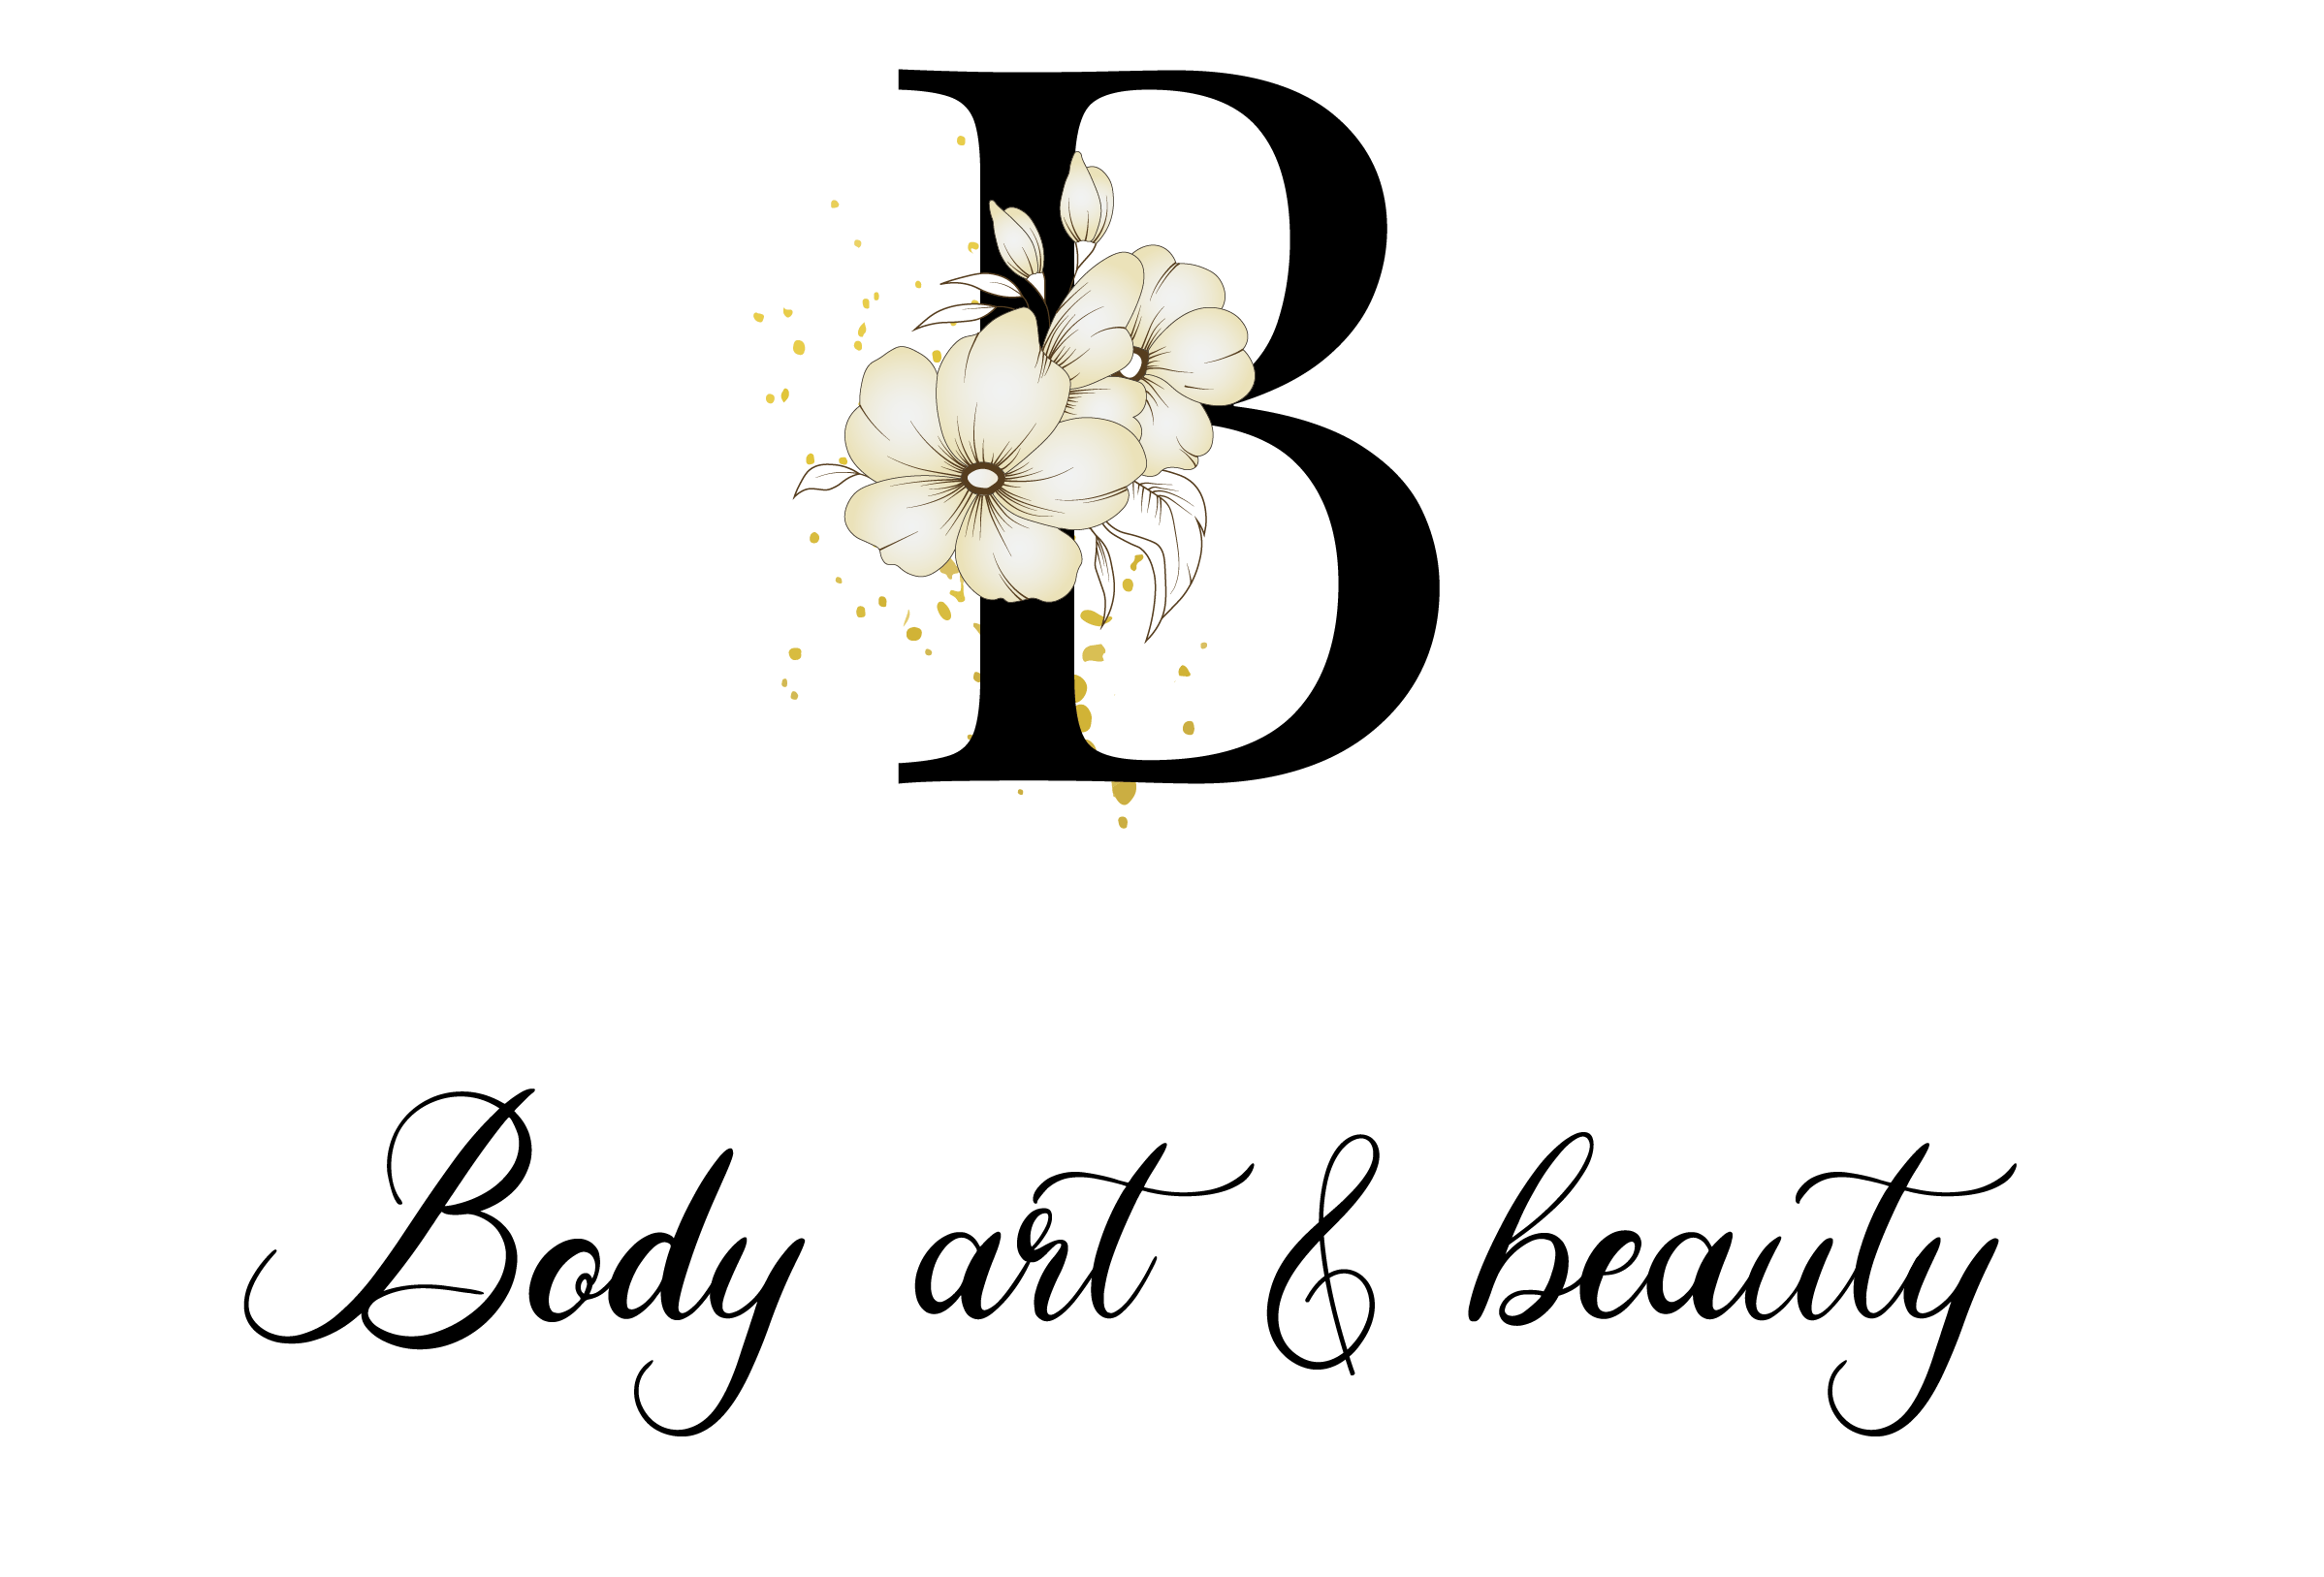 Logotip podjetja Body Art & Beauty, Anja Kolarič s.p.